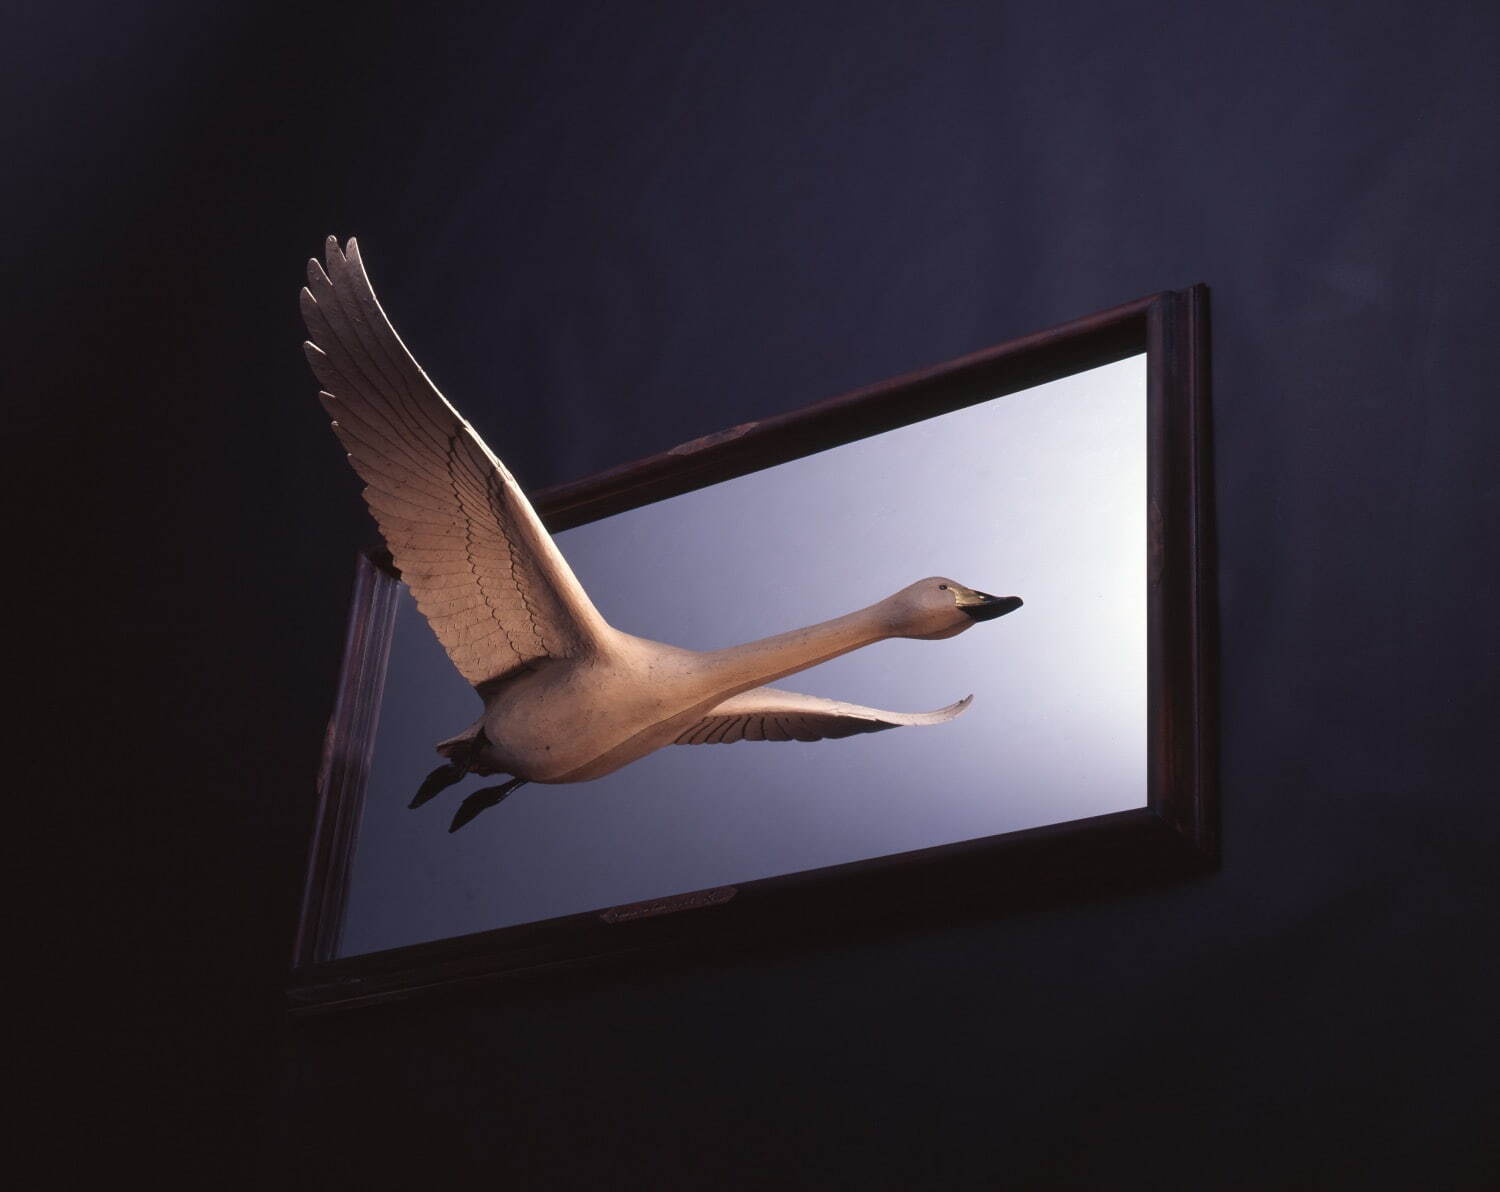 大森暁生 《Swan in the frame (Type-A)》 2005年 個人蔵
Photo: Katsura Endo ©AKIO OHMORI